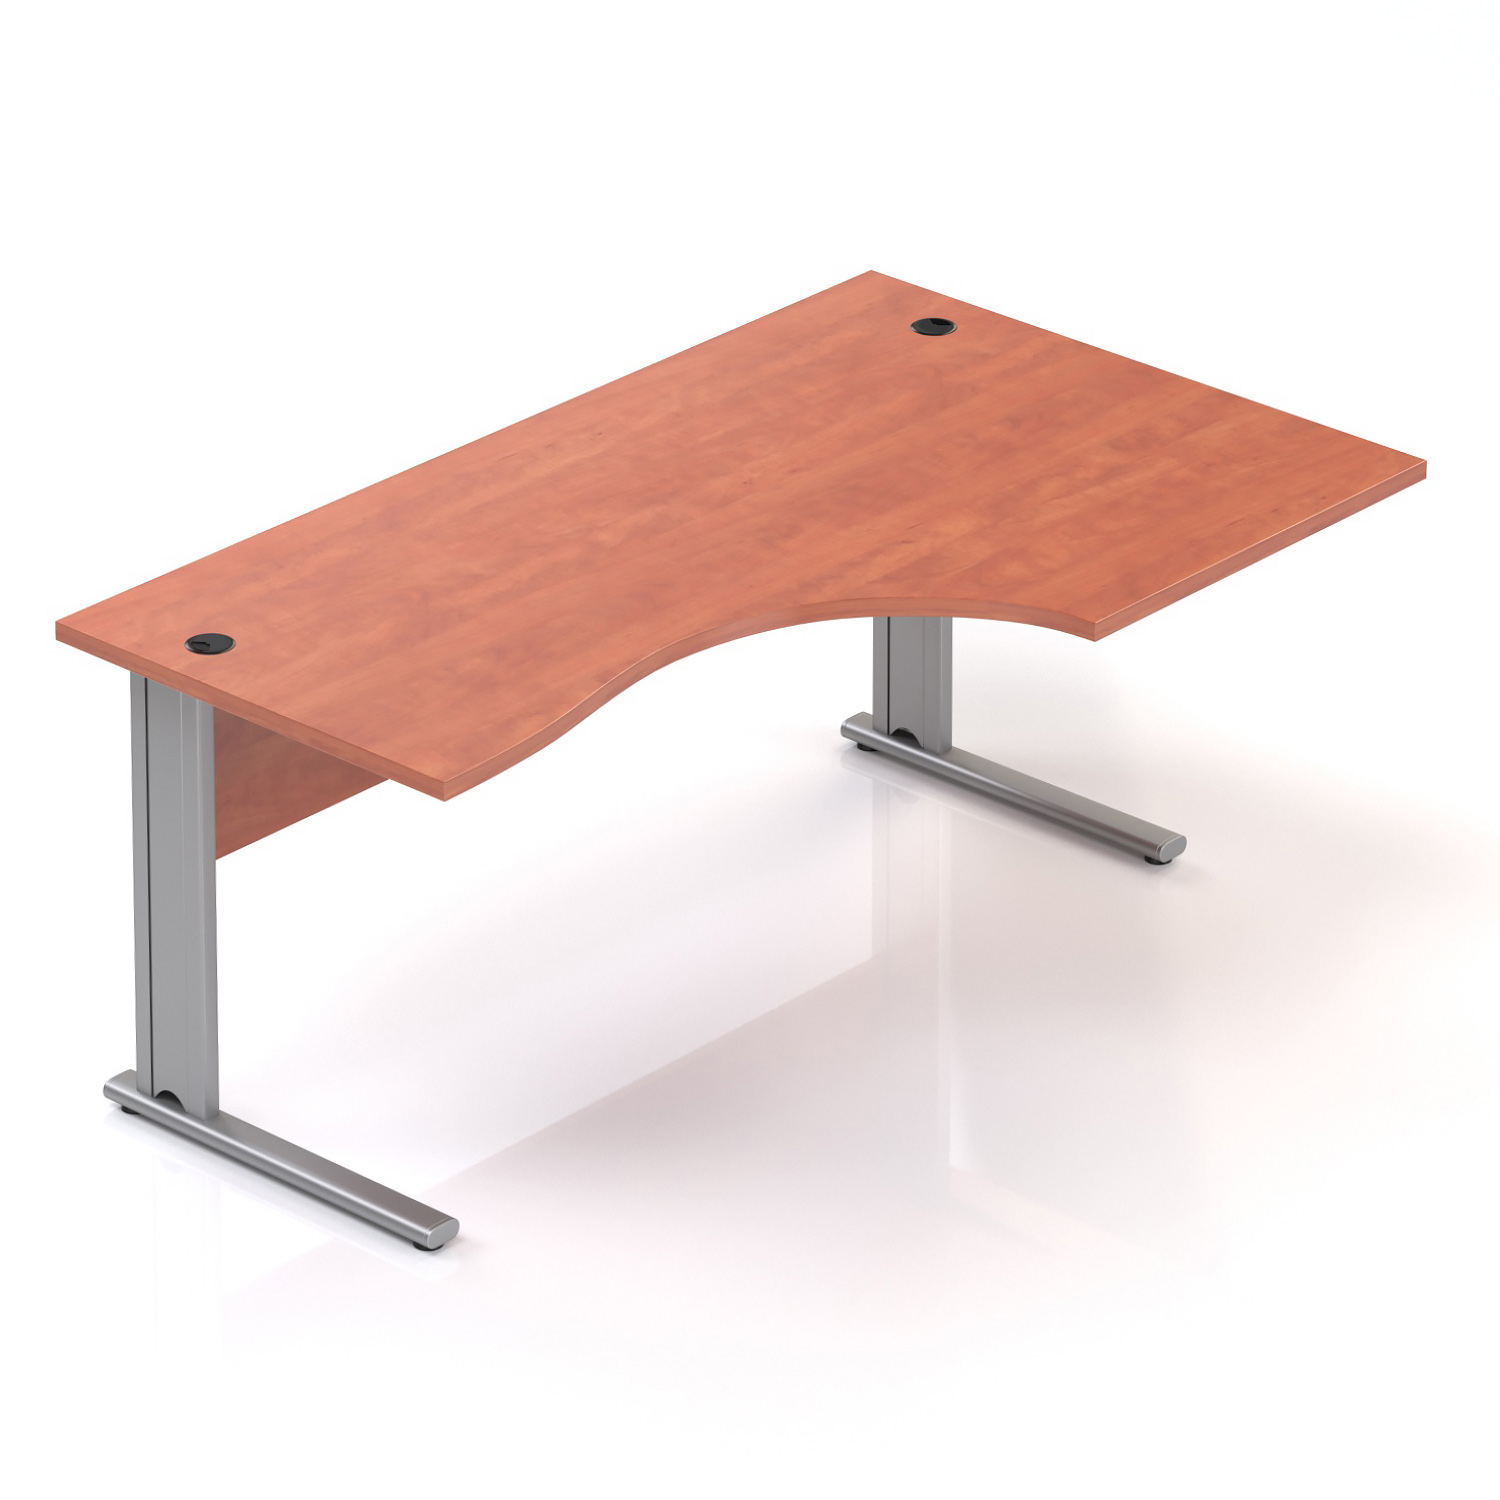 Kancelářský stůl rohový pravý Komfort, kovová podnož, 160x70/100x76 cm BPR20 03